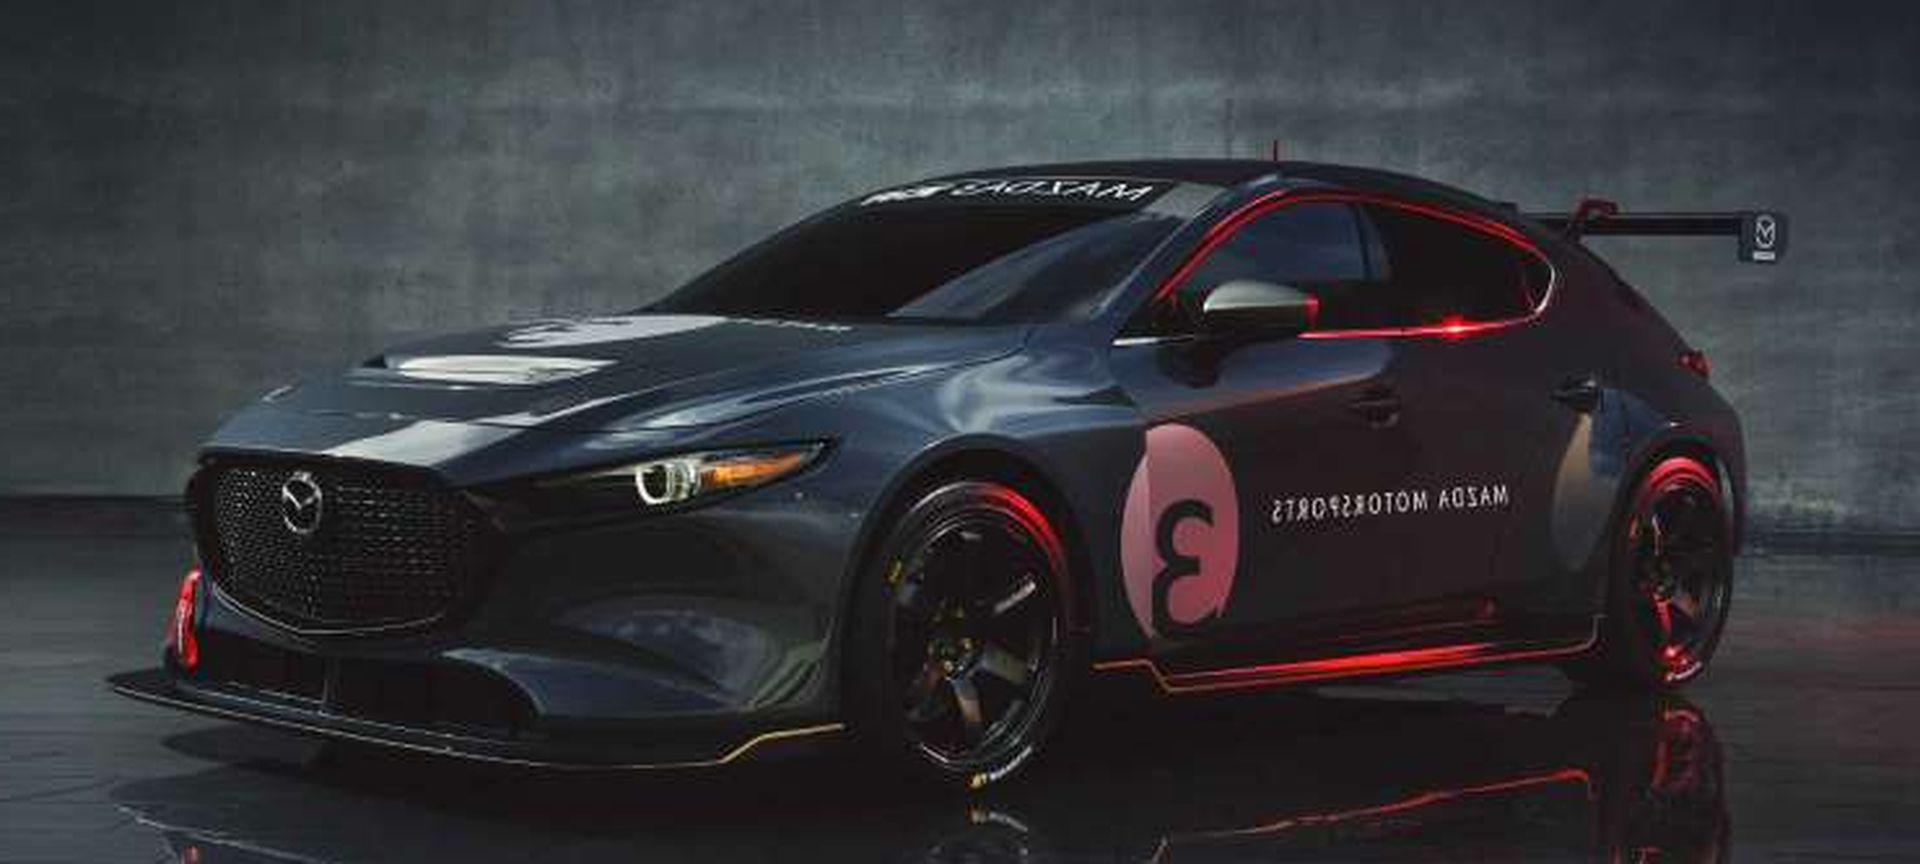 Nowy samochód wyścigowy Mazda 3 TCR ruszy na podbój torów